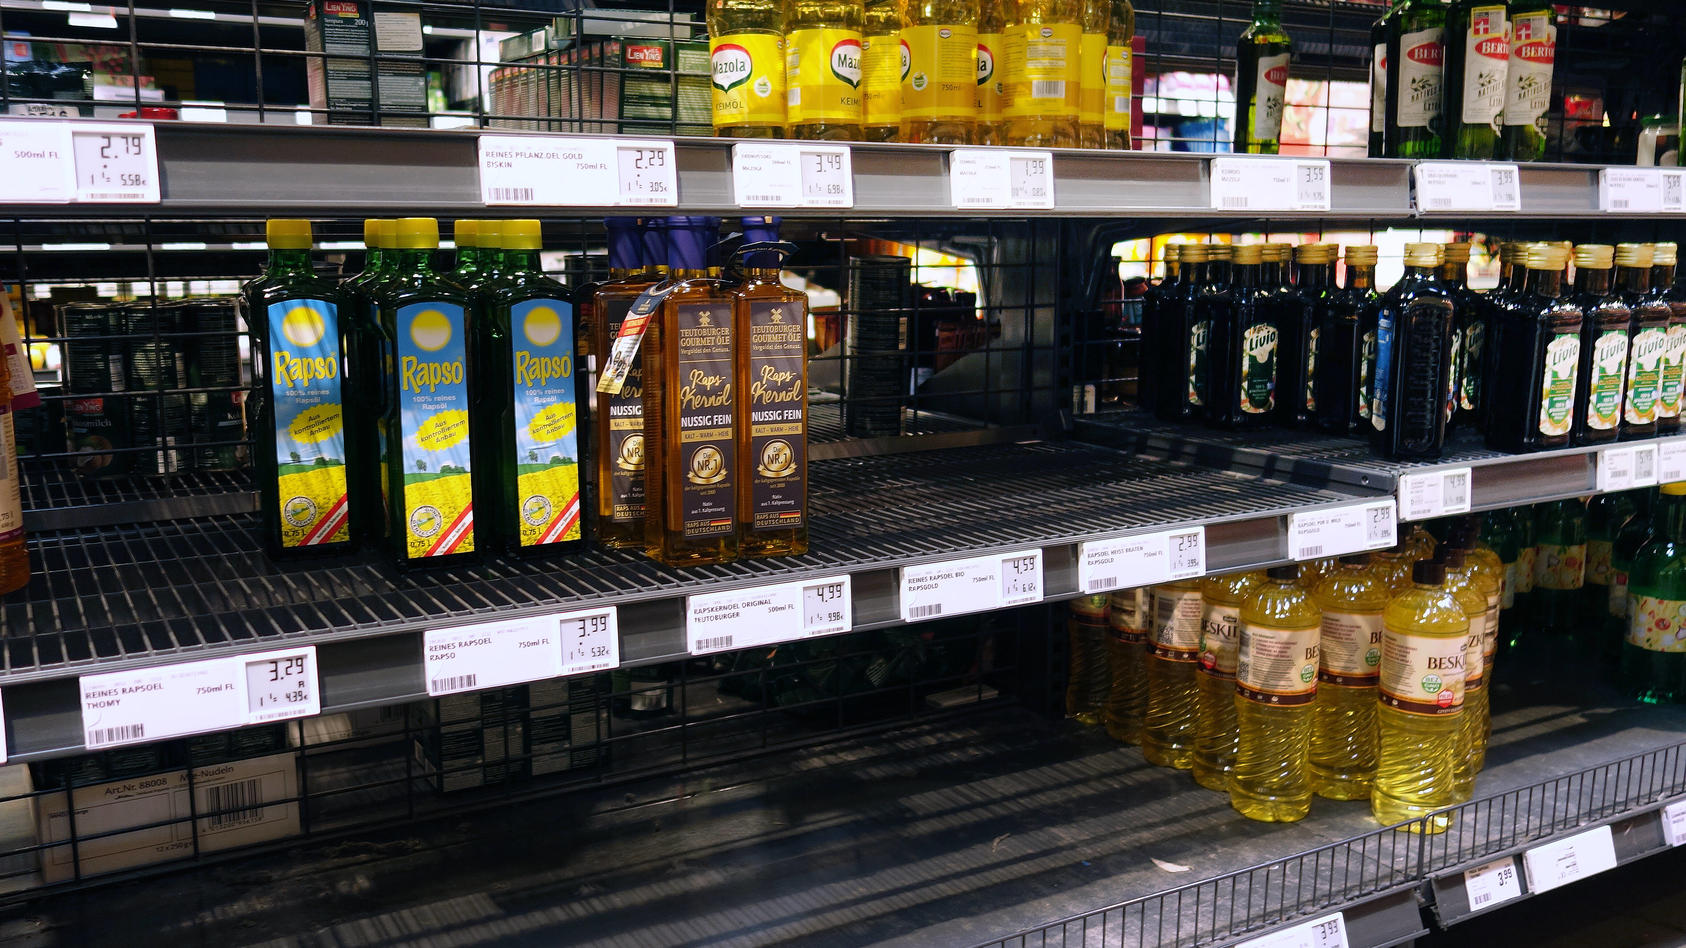  15.03.2022 Dortmund Vor leeren Regalen stehen die Verbraucher jetzt oft , wenn sie nach Sonneneblumenöl oder preiswertem Speiseöl suchen. Aufgrund des Ukrainekrieges sind die Lieferwege blockiert. Der Seeweg über das Schwarze Meer ist zur Zeit durch